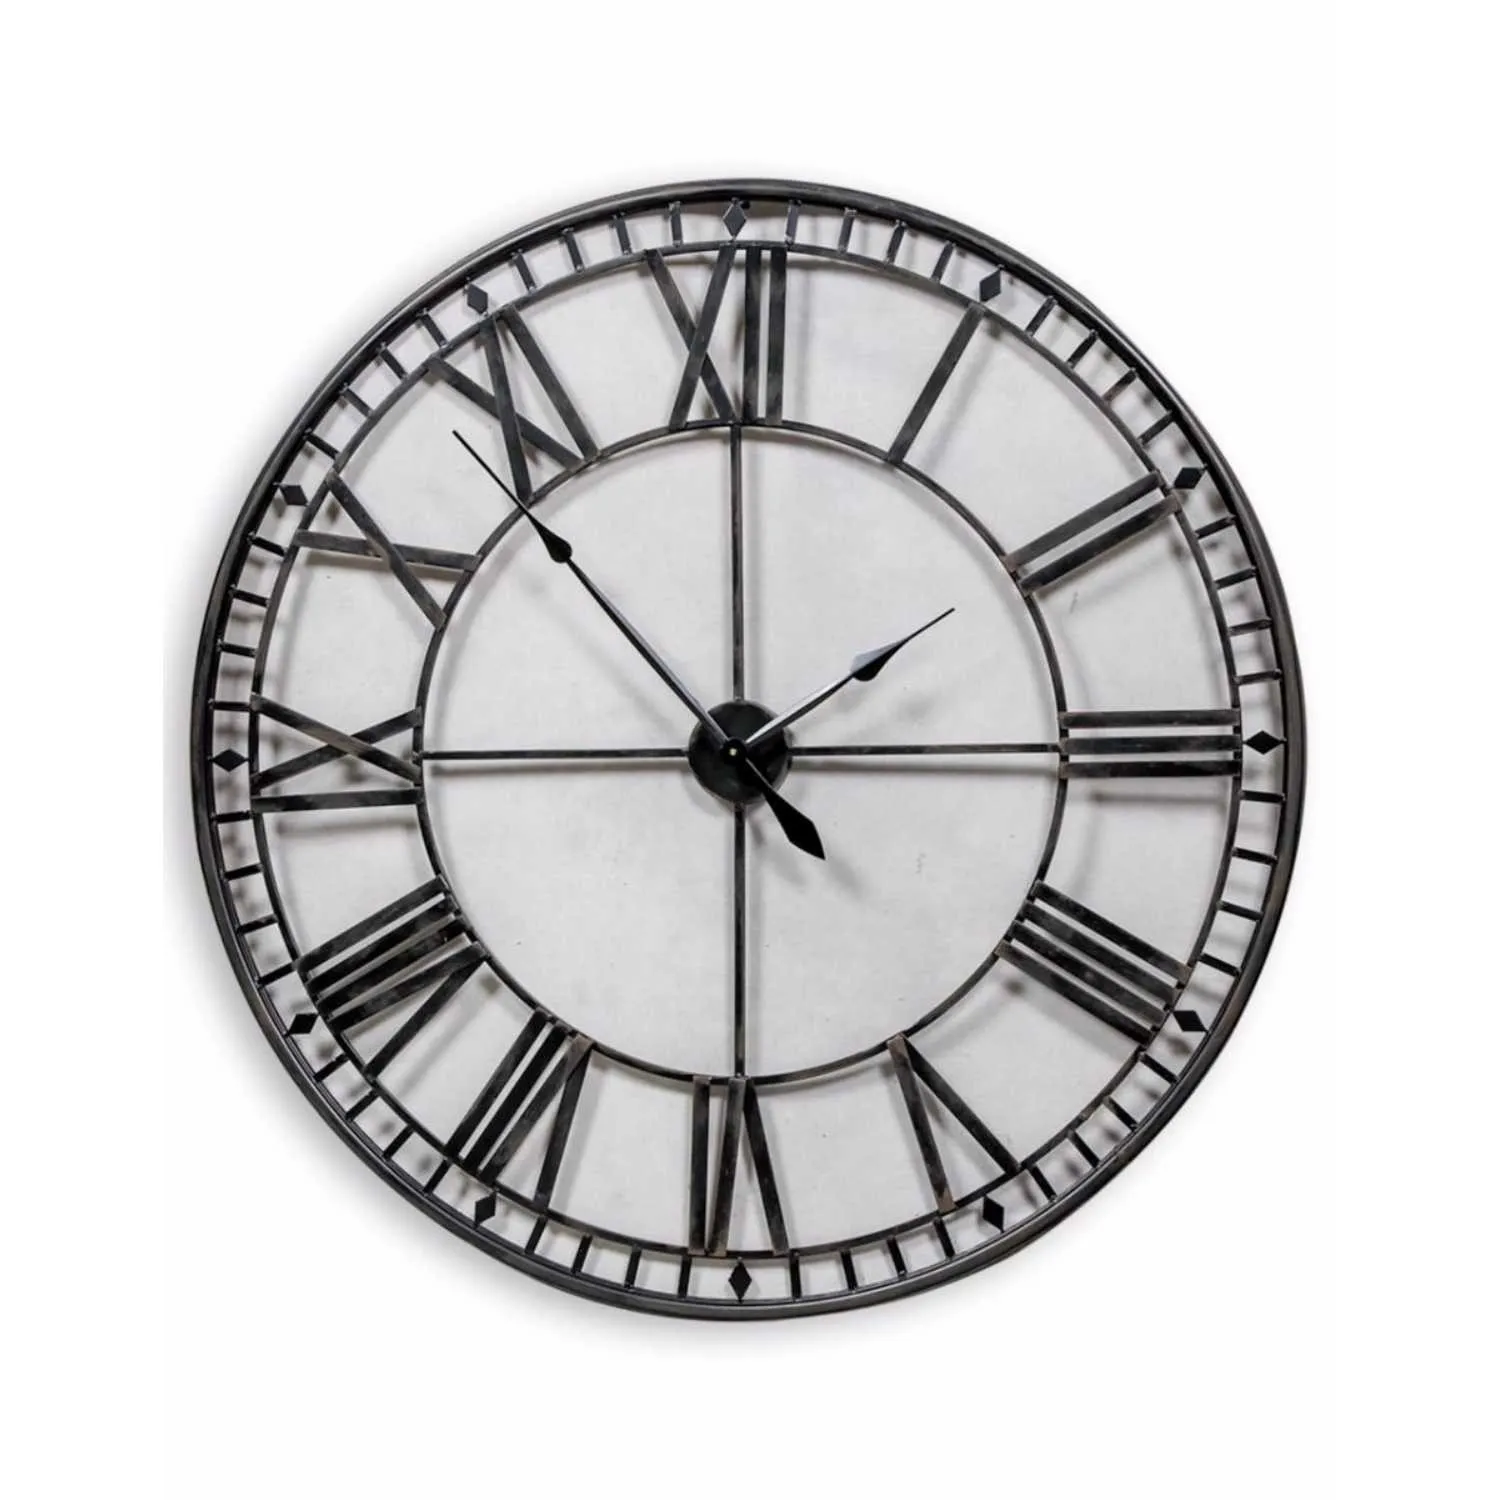 Large Black Round Metal Skeleton Wall Clock 120cm Diameter